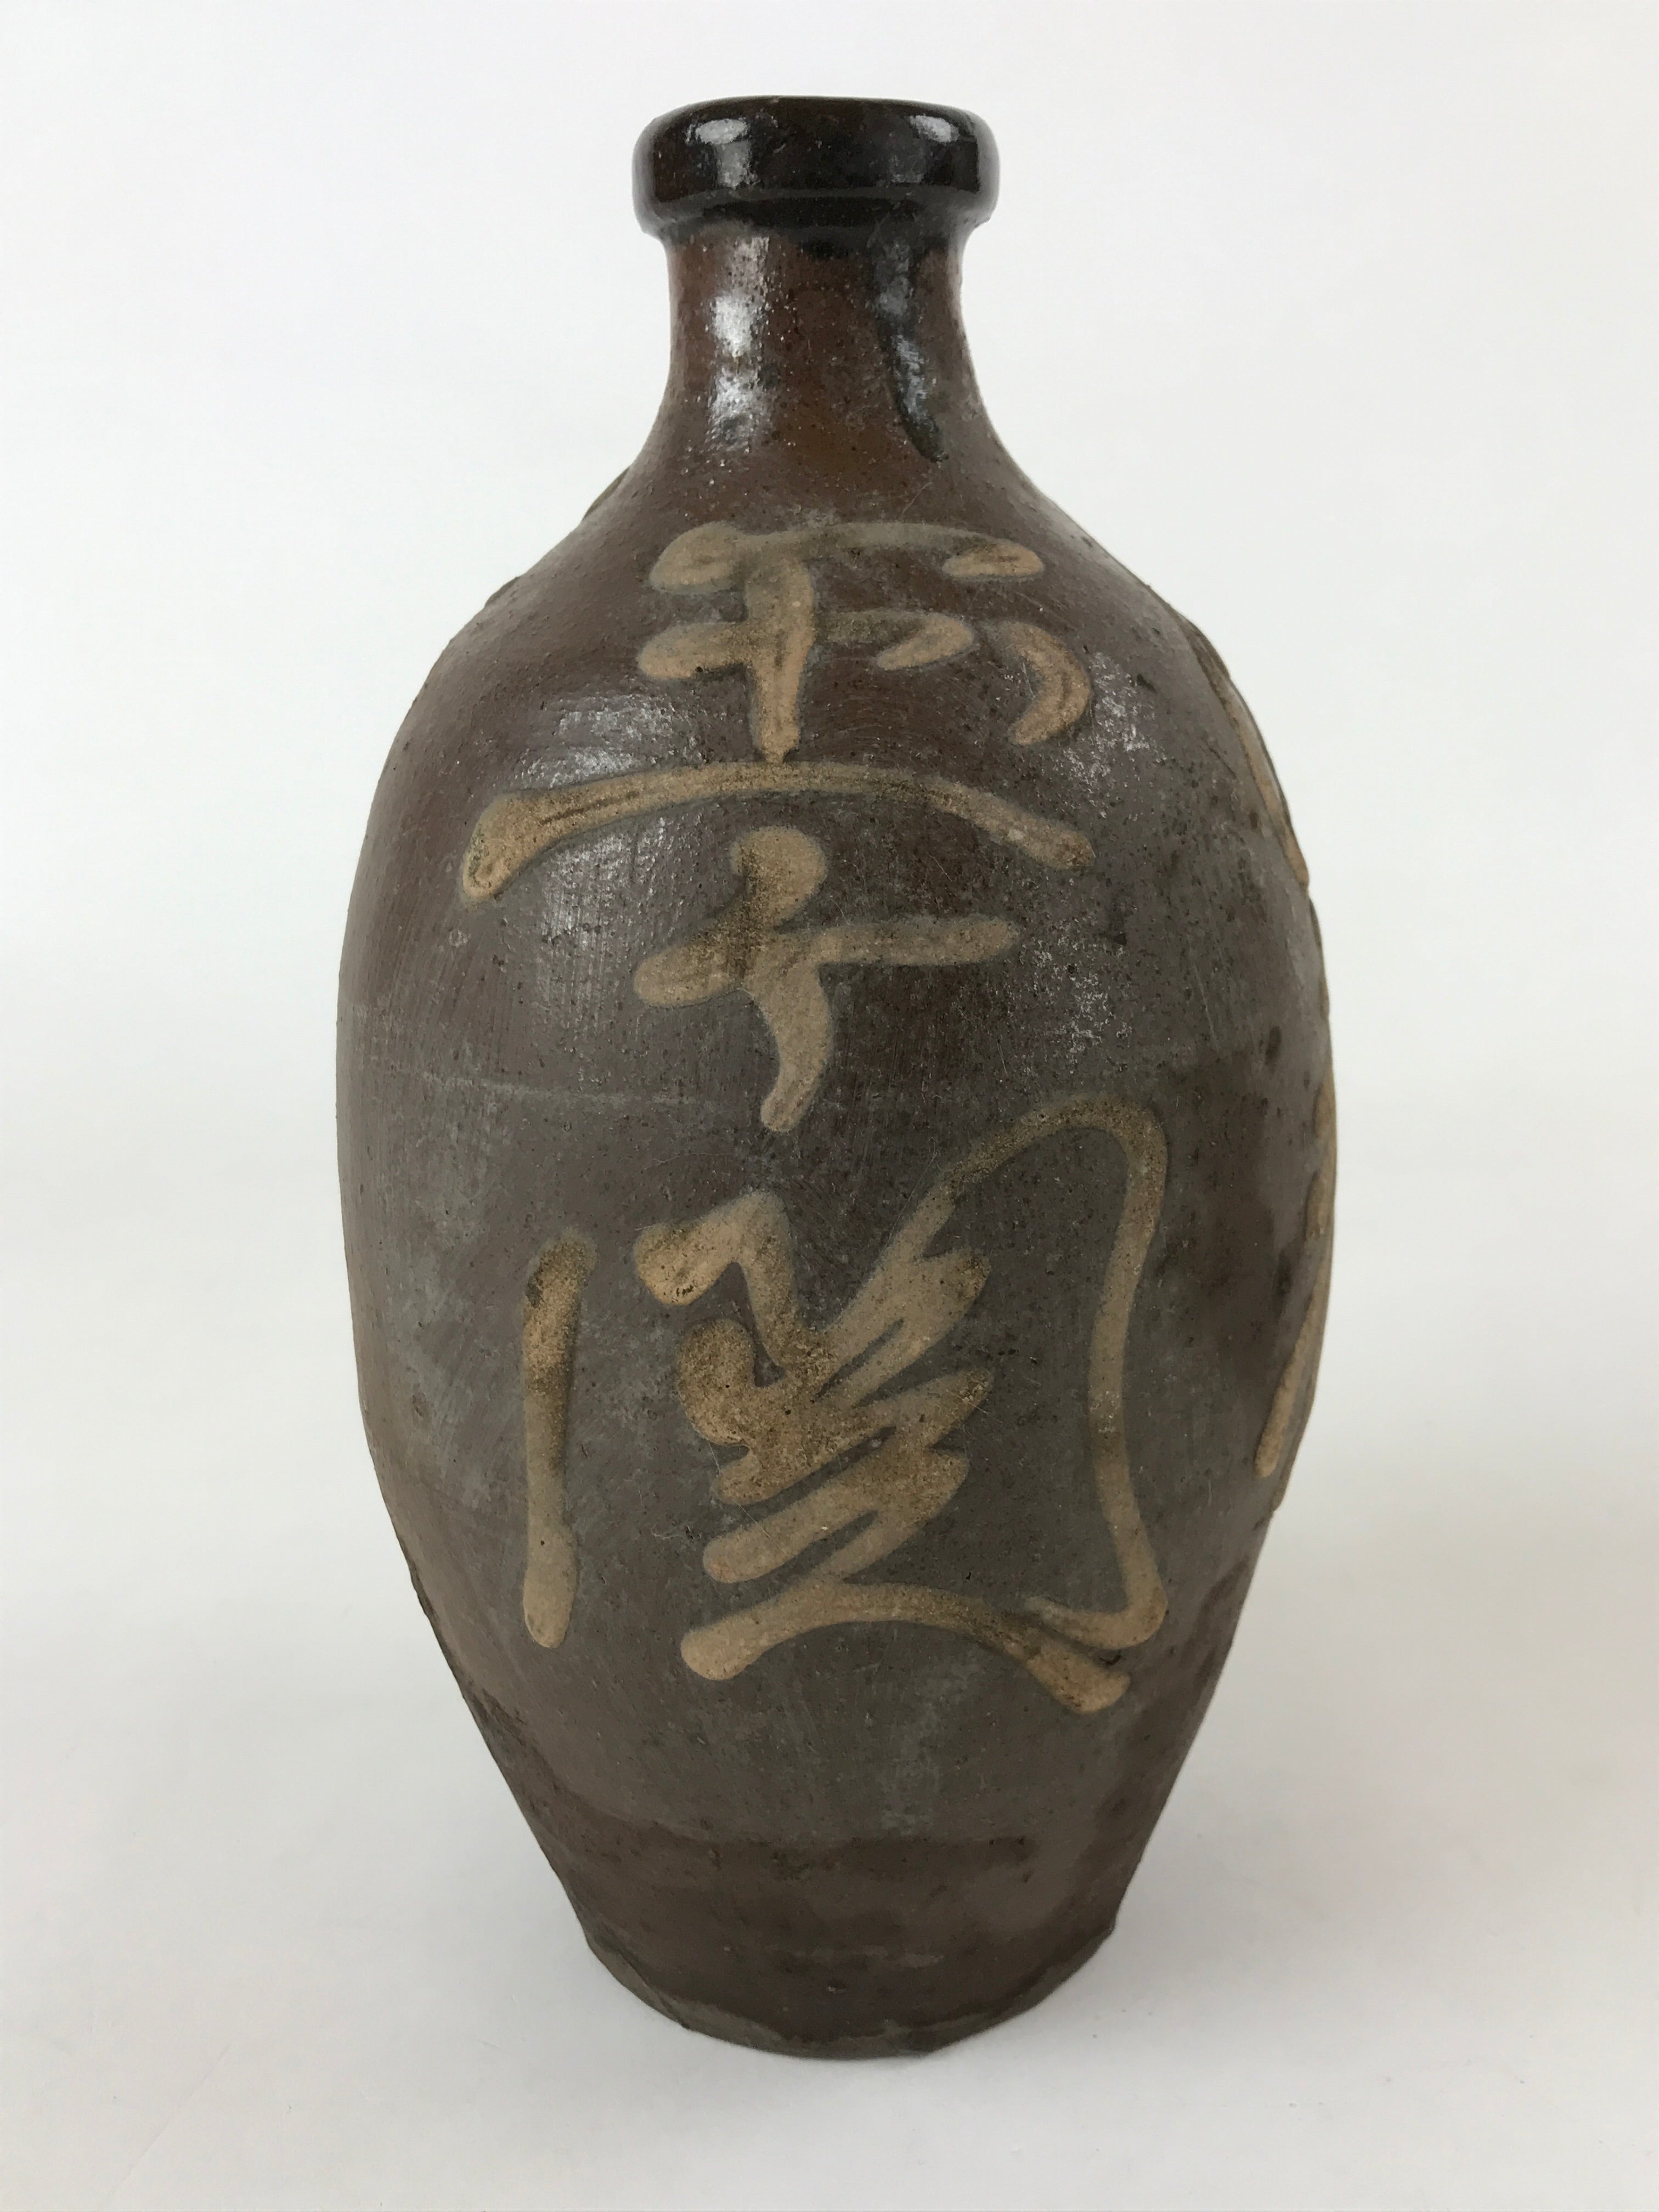 Antique Japanese Ceramic Sake Bottle Kayoi-Tokkuri Vtg Matte Brown Kanji TS585